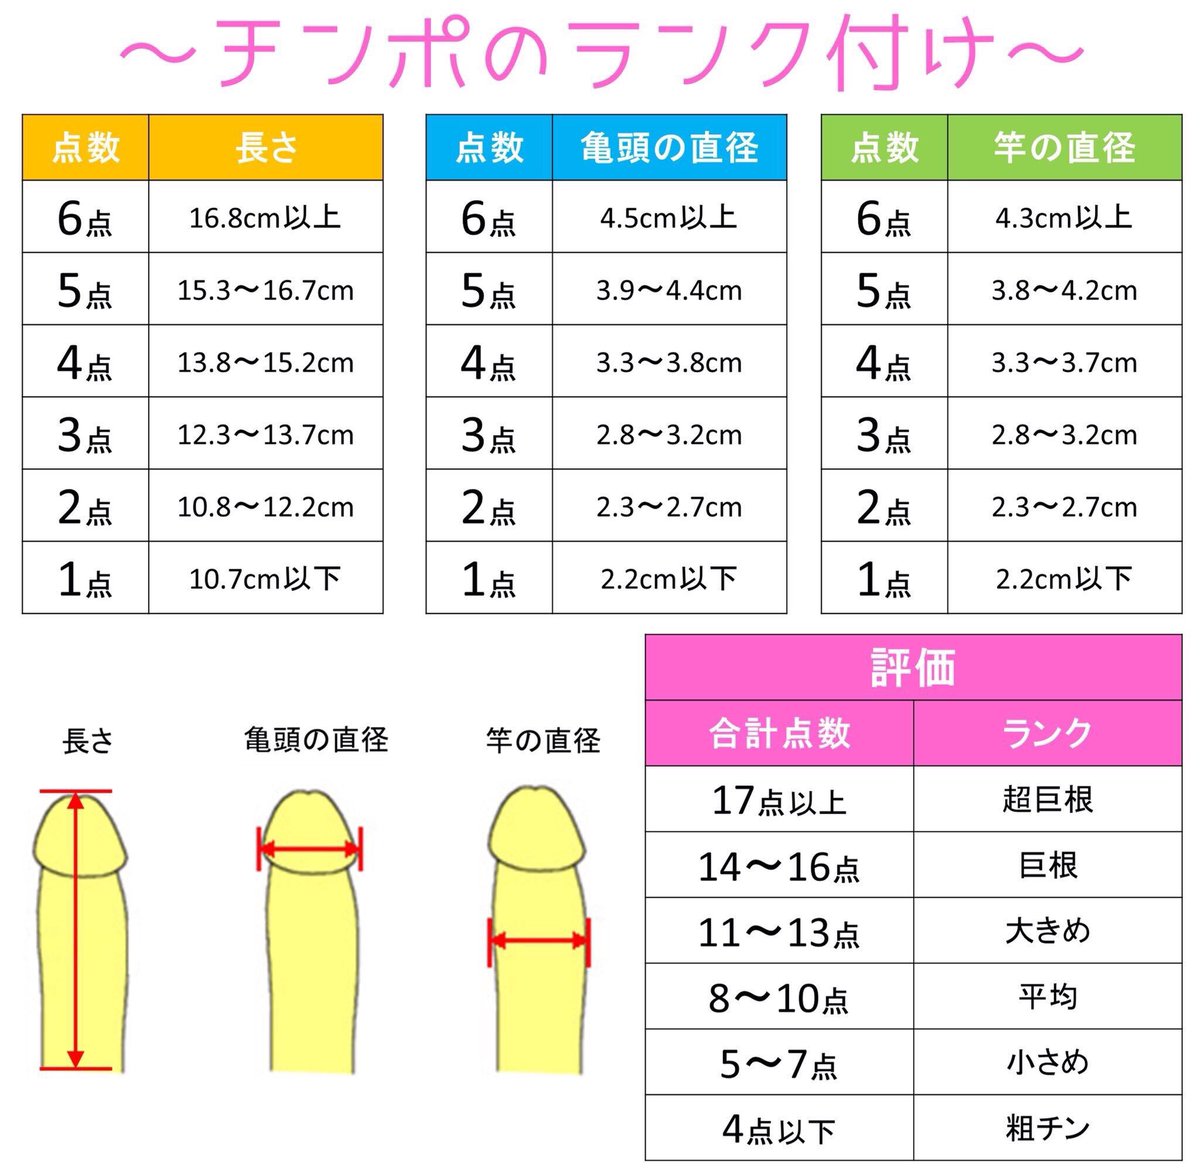 基準 巨根 【デカチン判定】日本人平均基準でのデカマラ/巨根ペニスは何cmから？